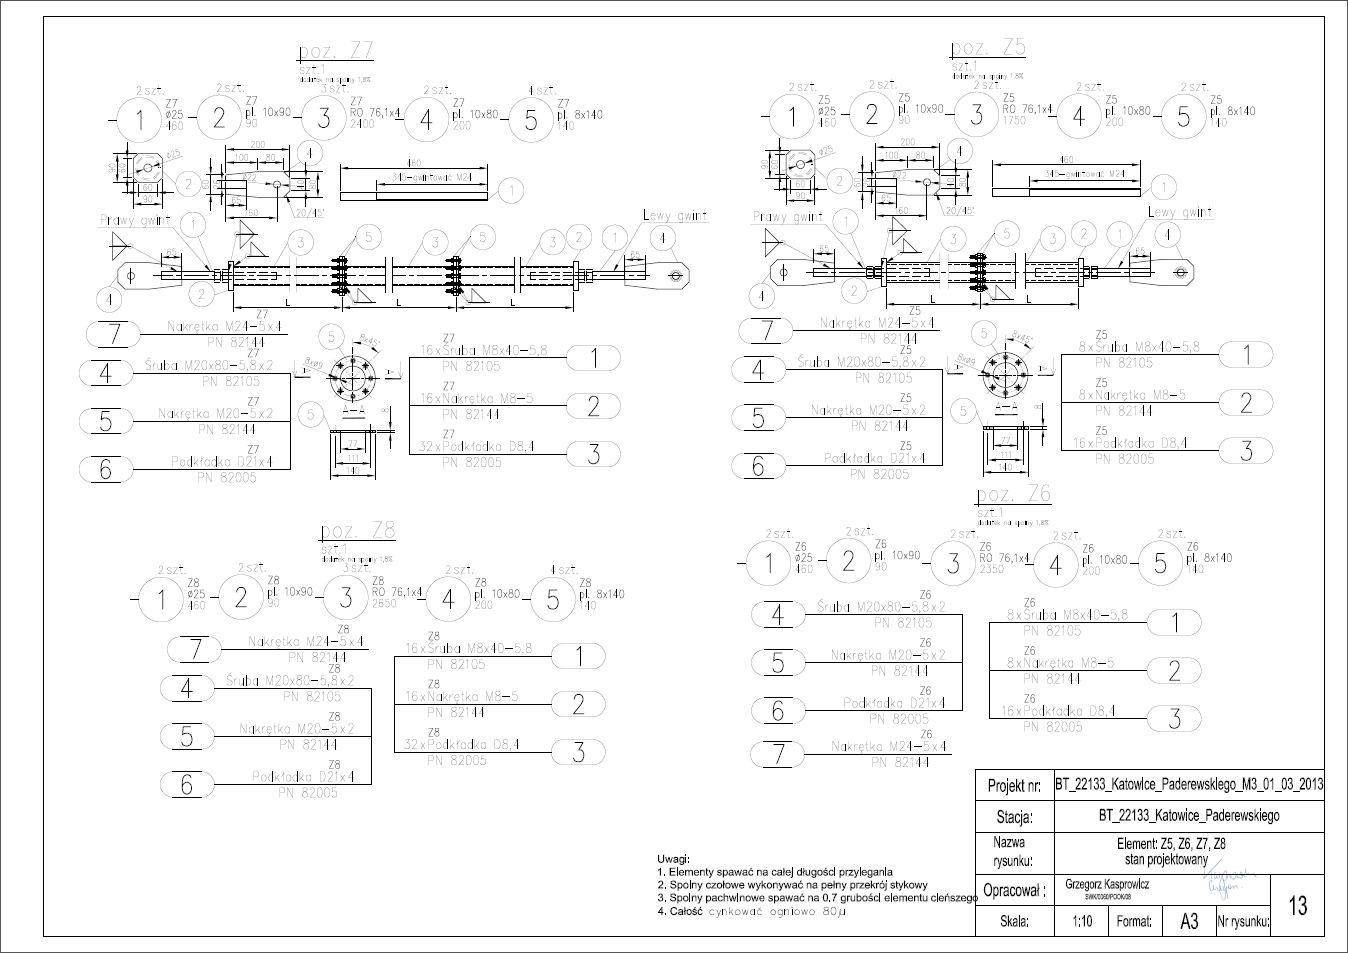 Stacja bazowa - element Z5, Z6, Z7, Z8